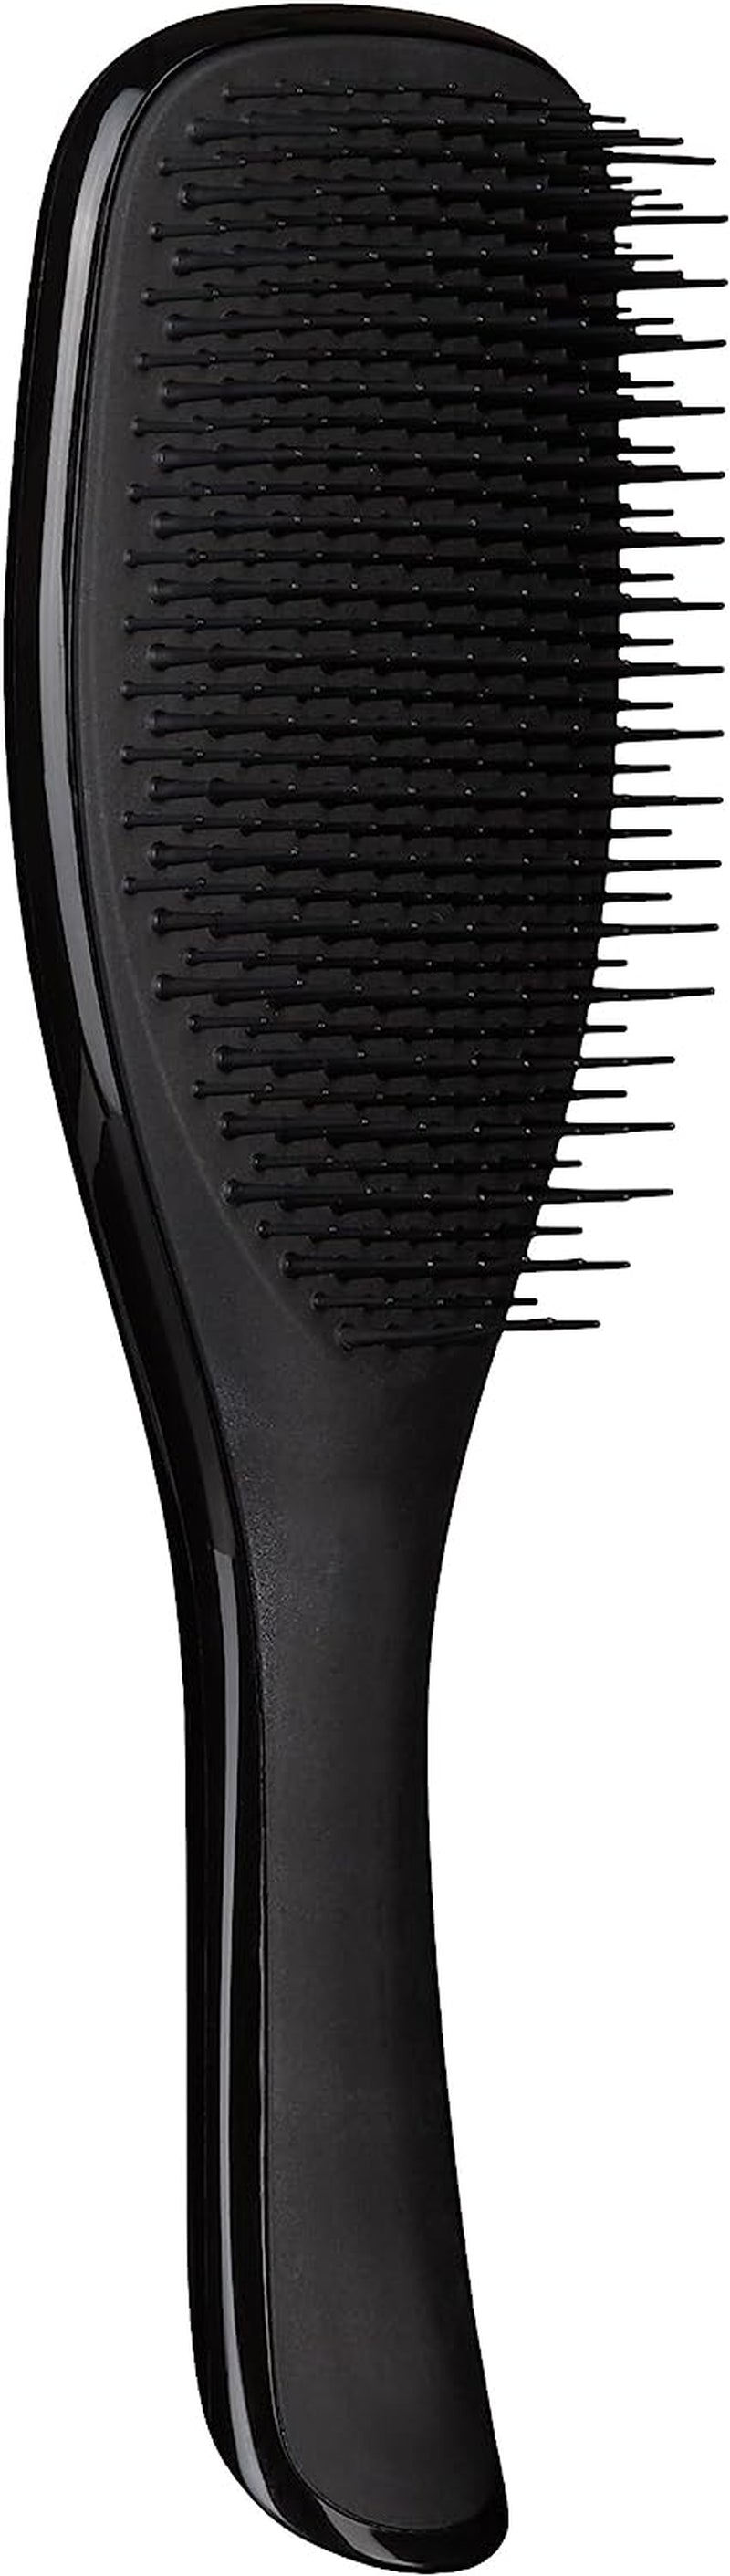 Wet Detangler Hairbrush - Liquorice Black